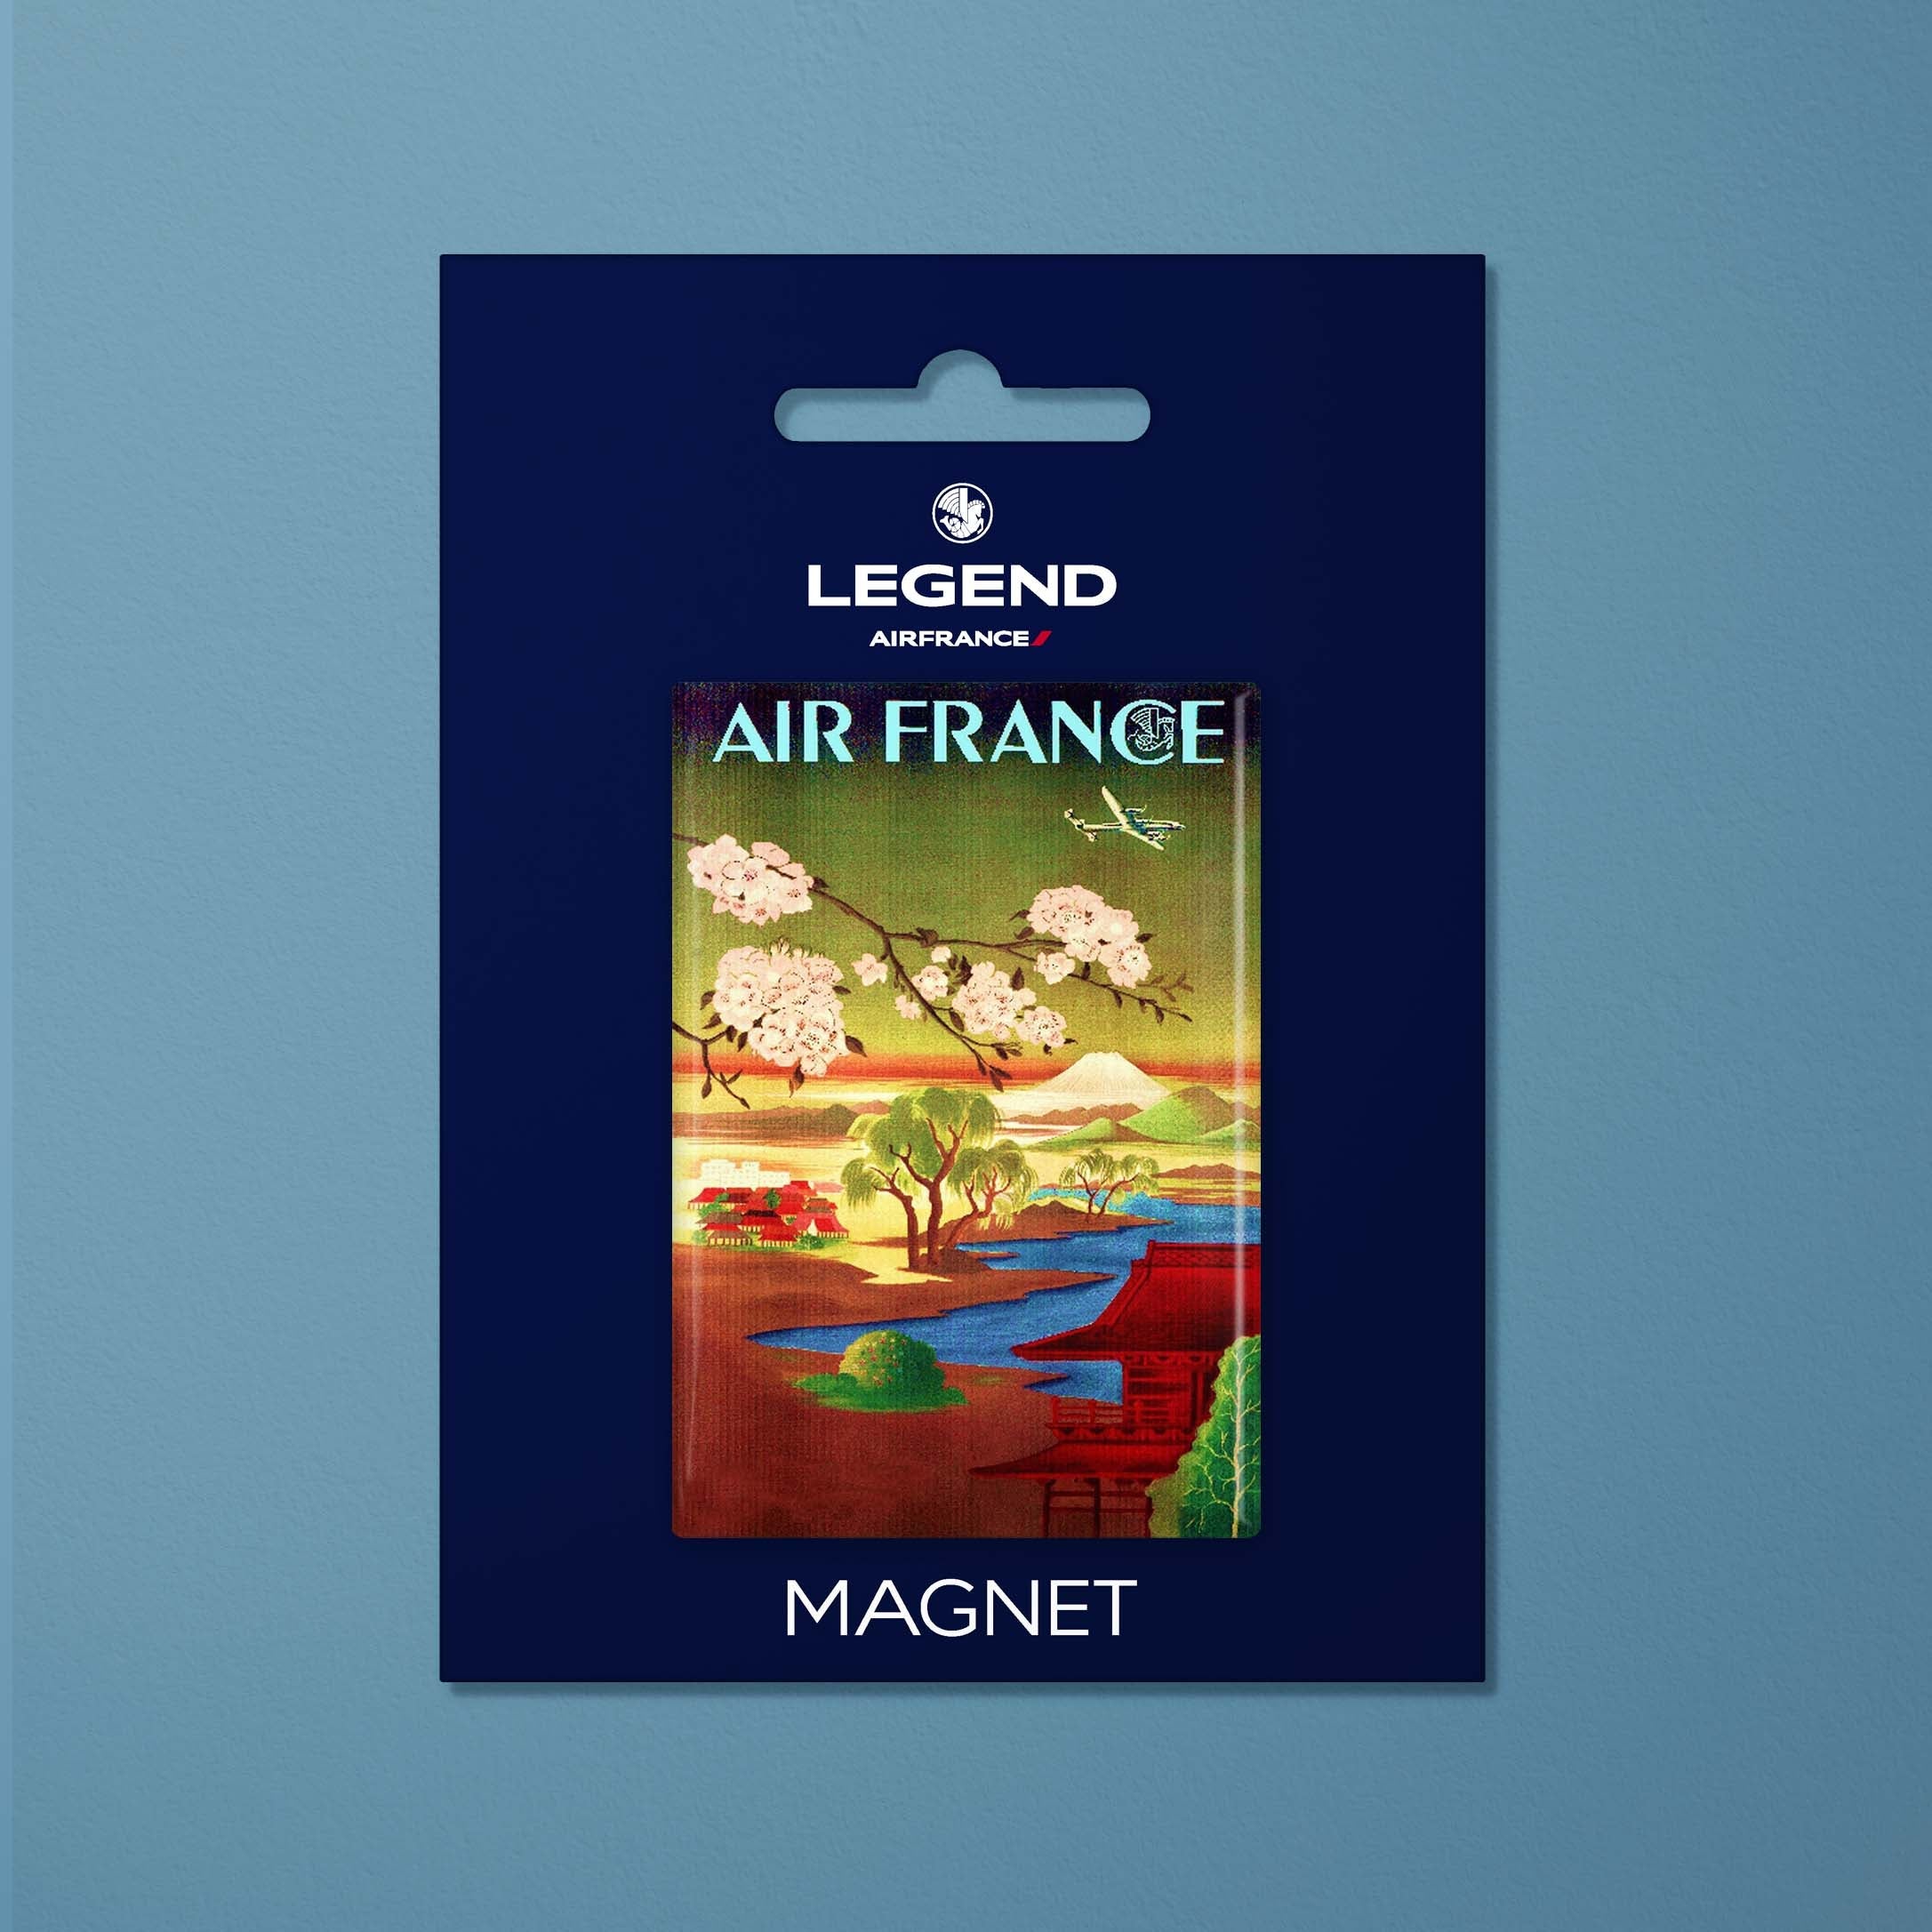 Magnet Air France Legend Paris - Tokio, fleurs de cerisier